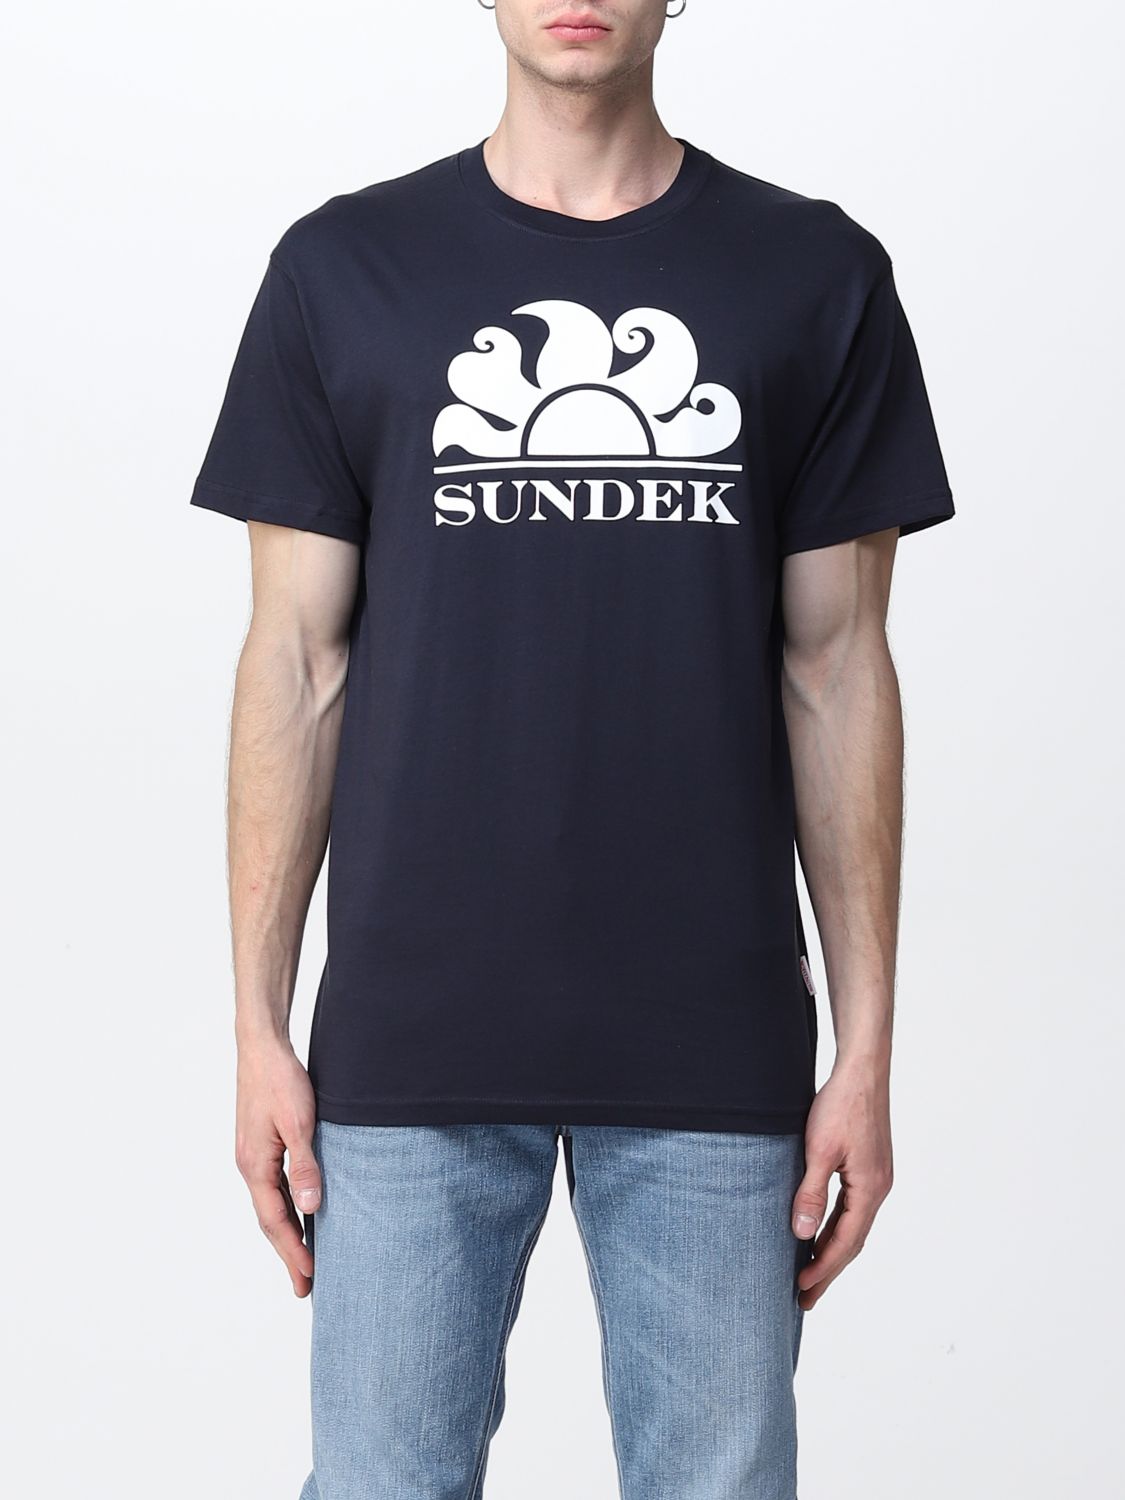 Sundek T-shirt With Logo In Navy